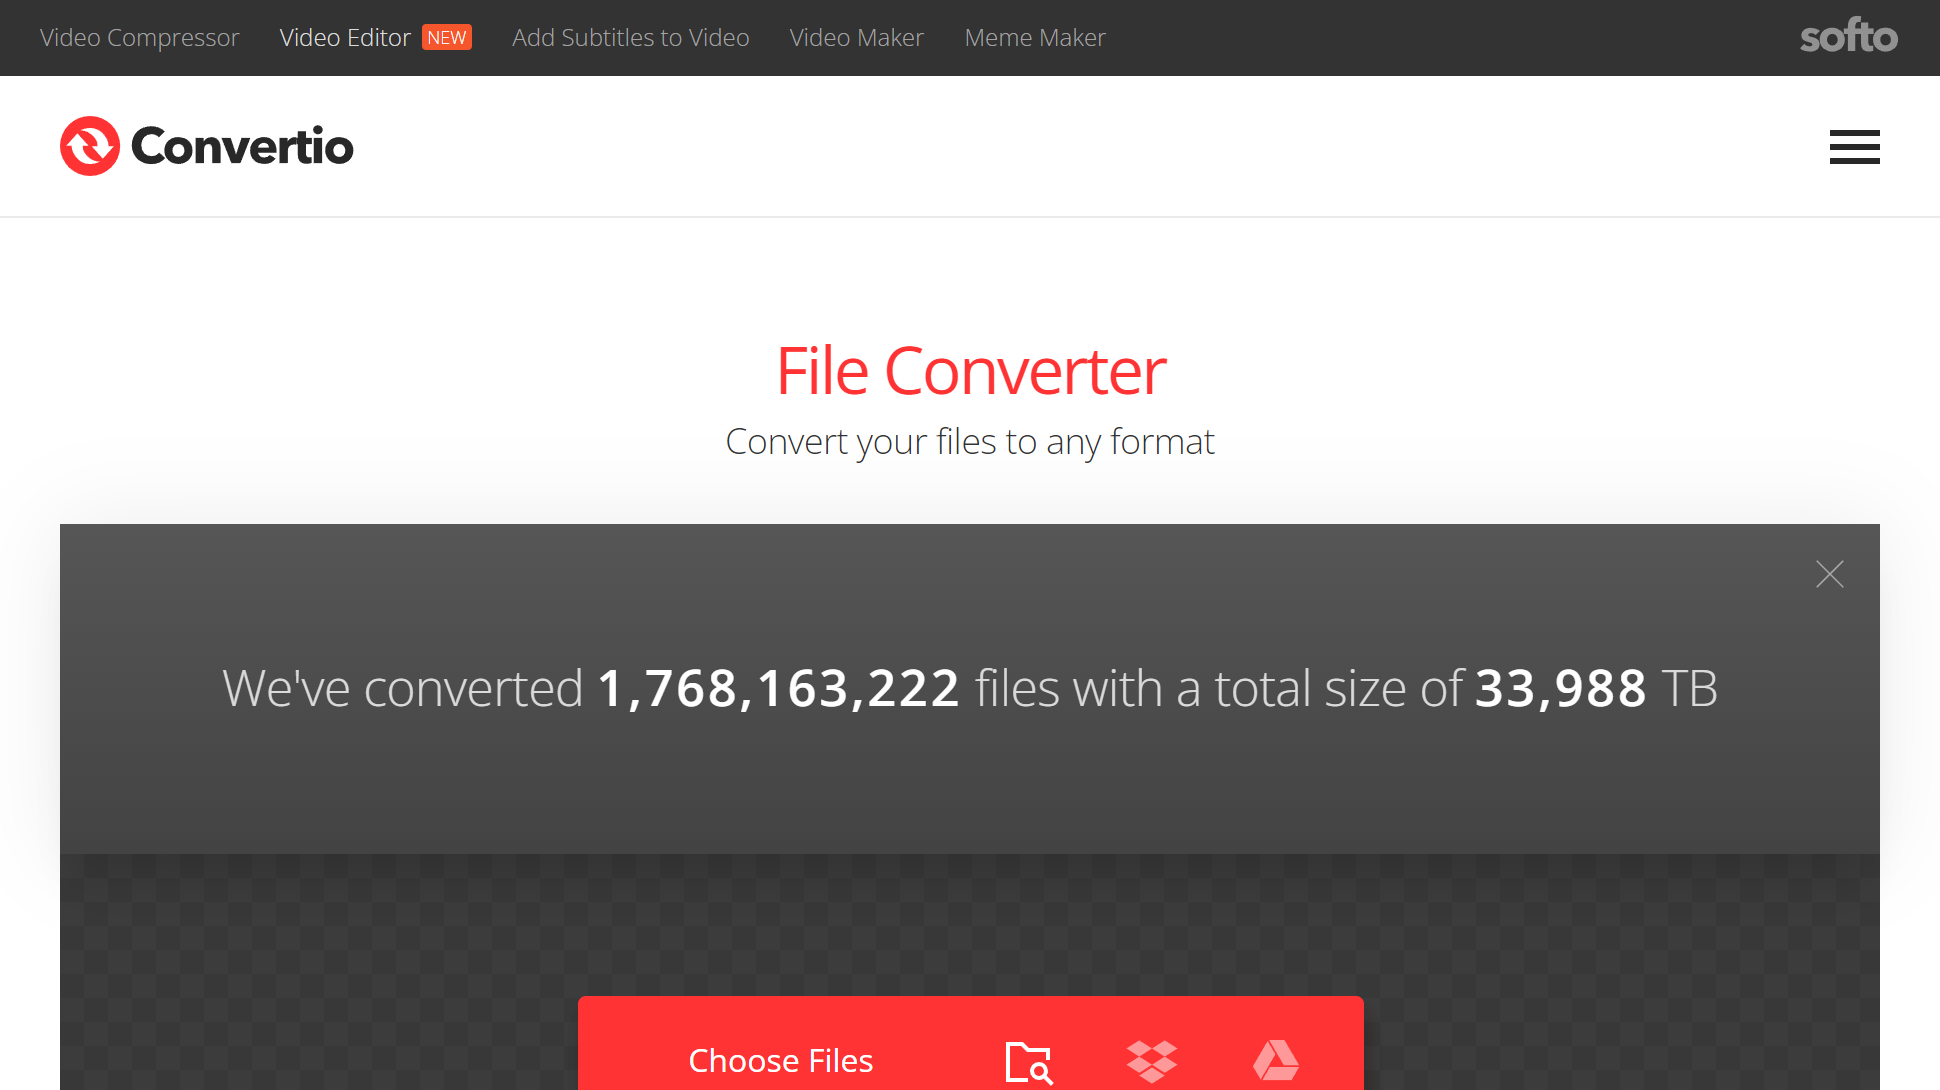 Captura de pantalla del sitio web del convertidor de archivos Convertio